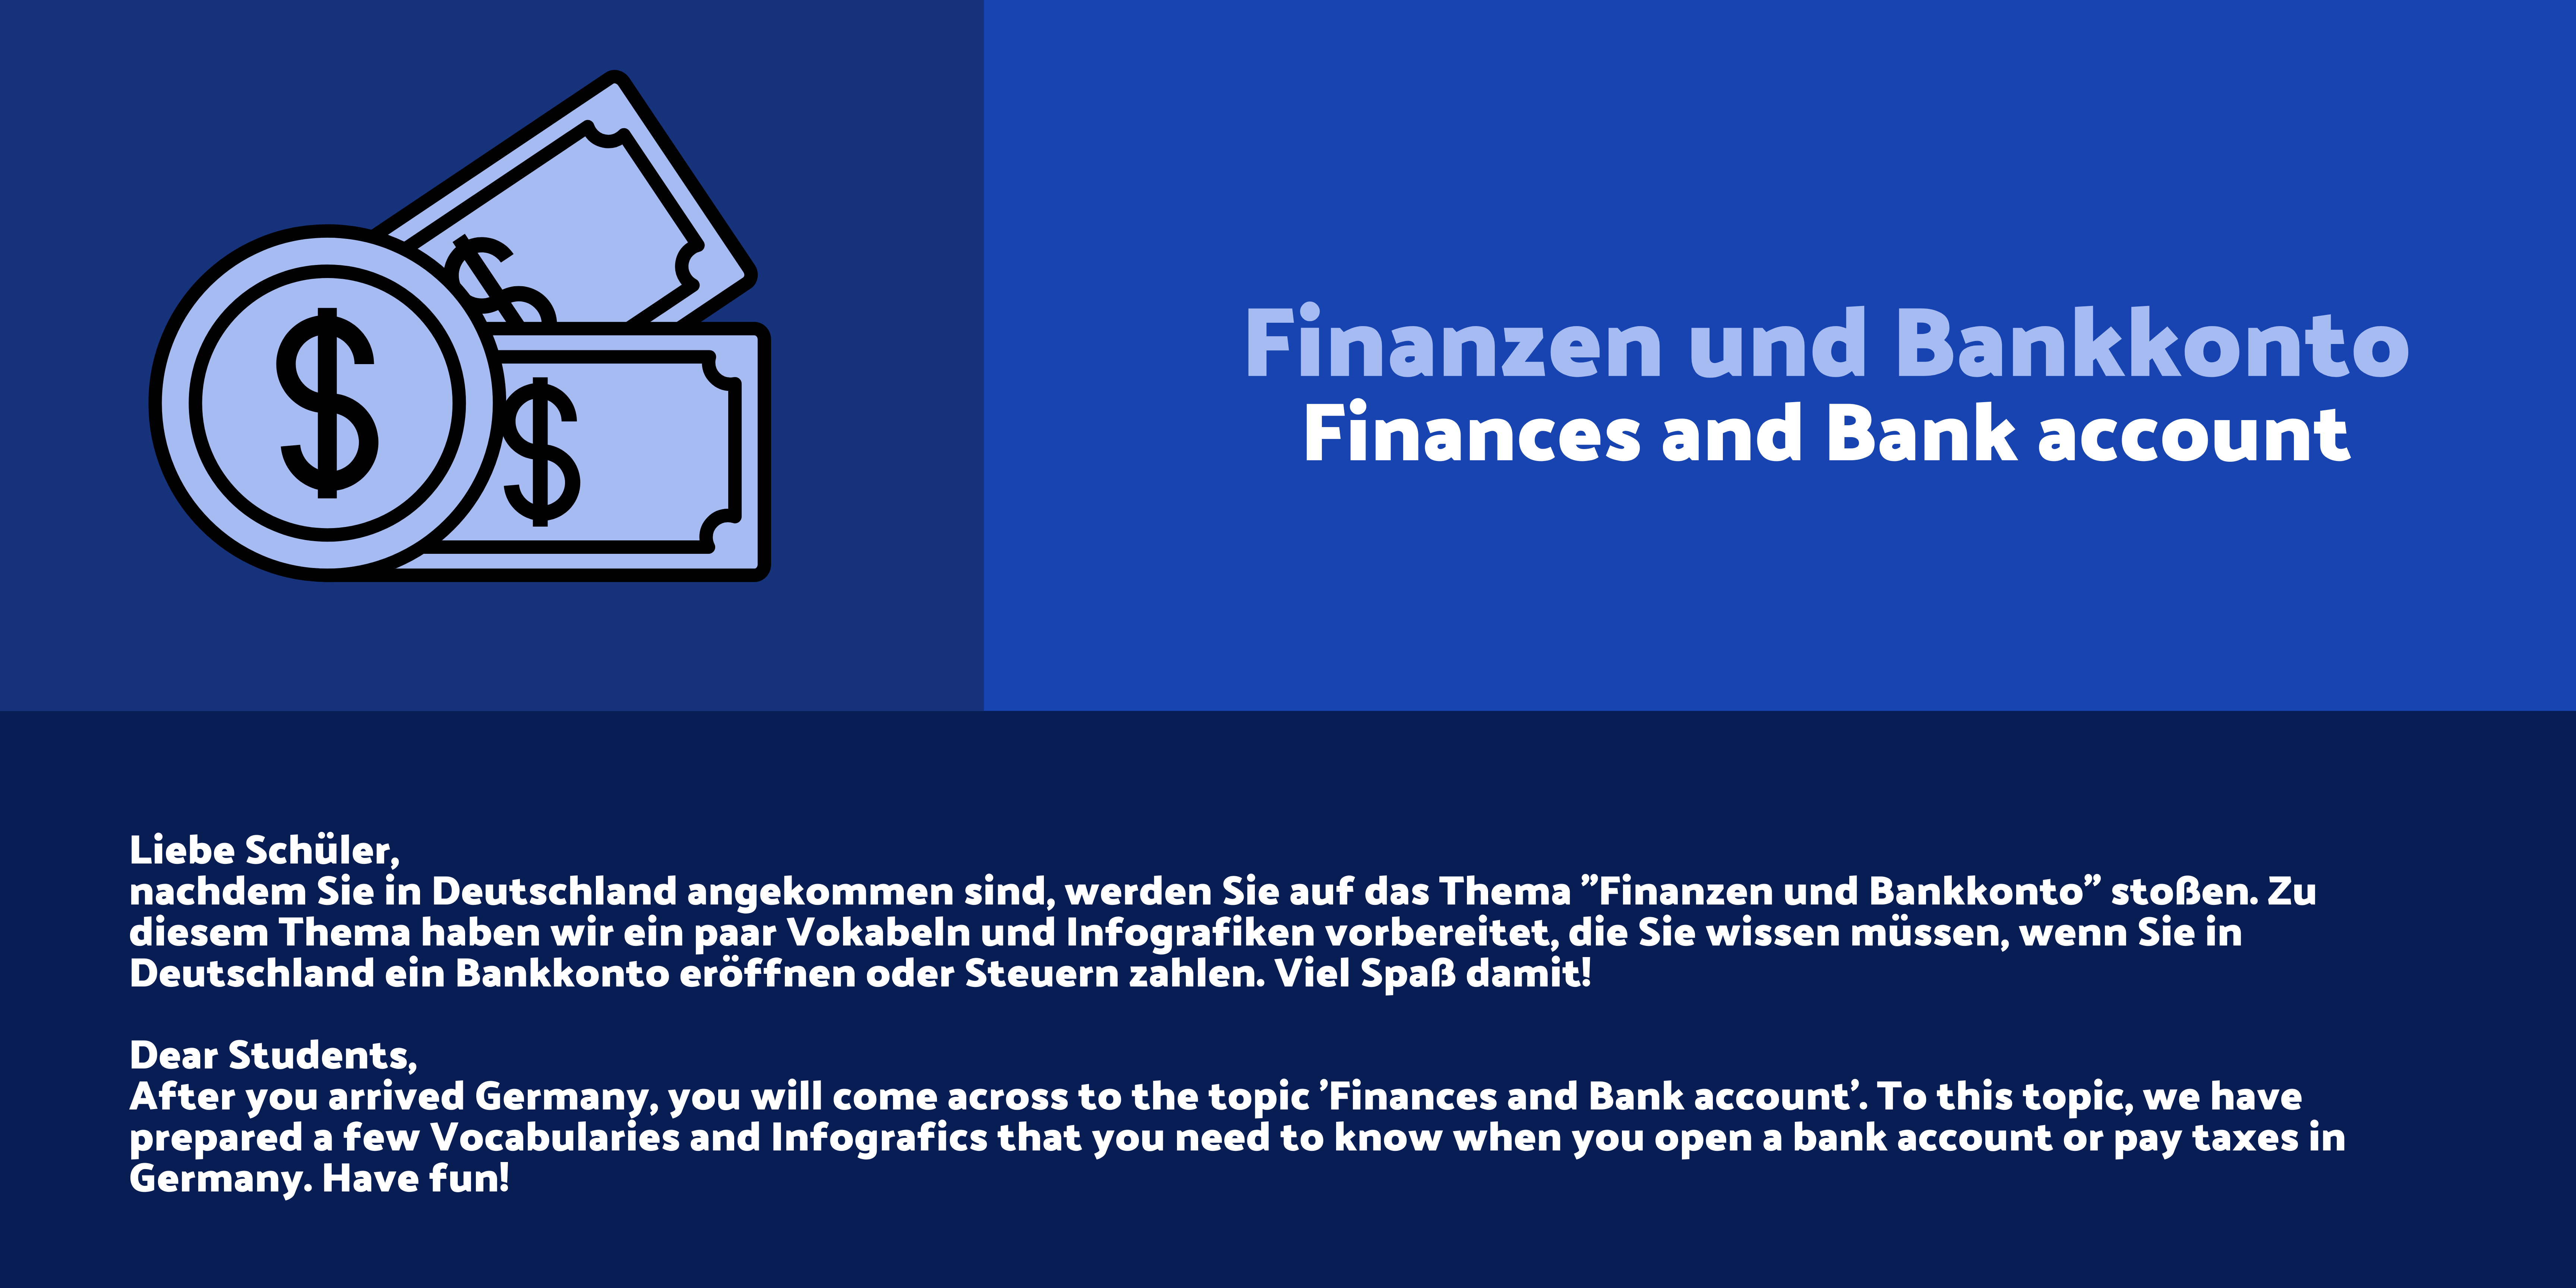 Einführung in das Thema Finanzen und Bankkonto.
Introduction to the topic Finances and Bank account.